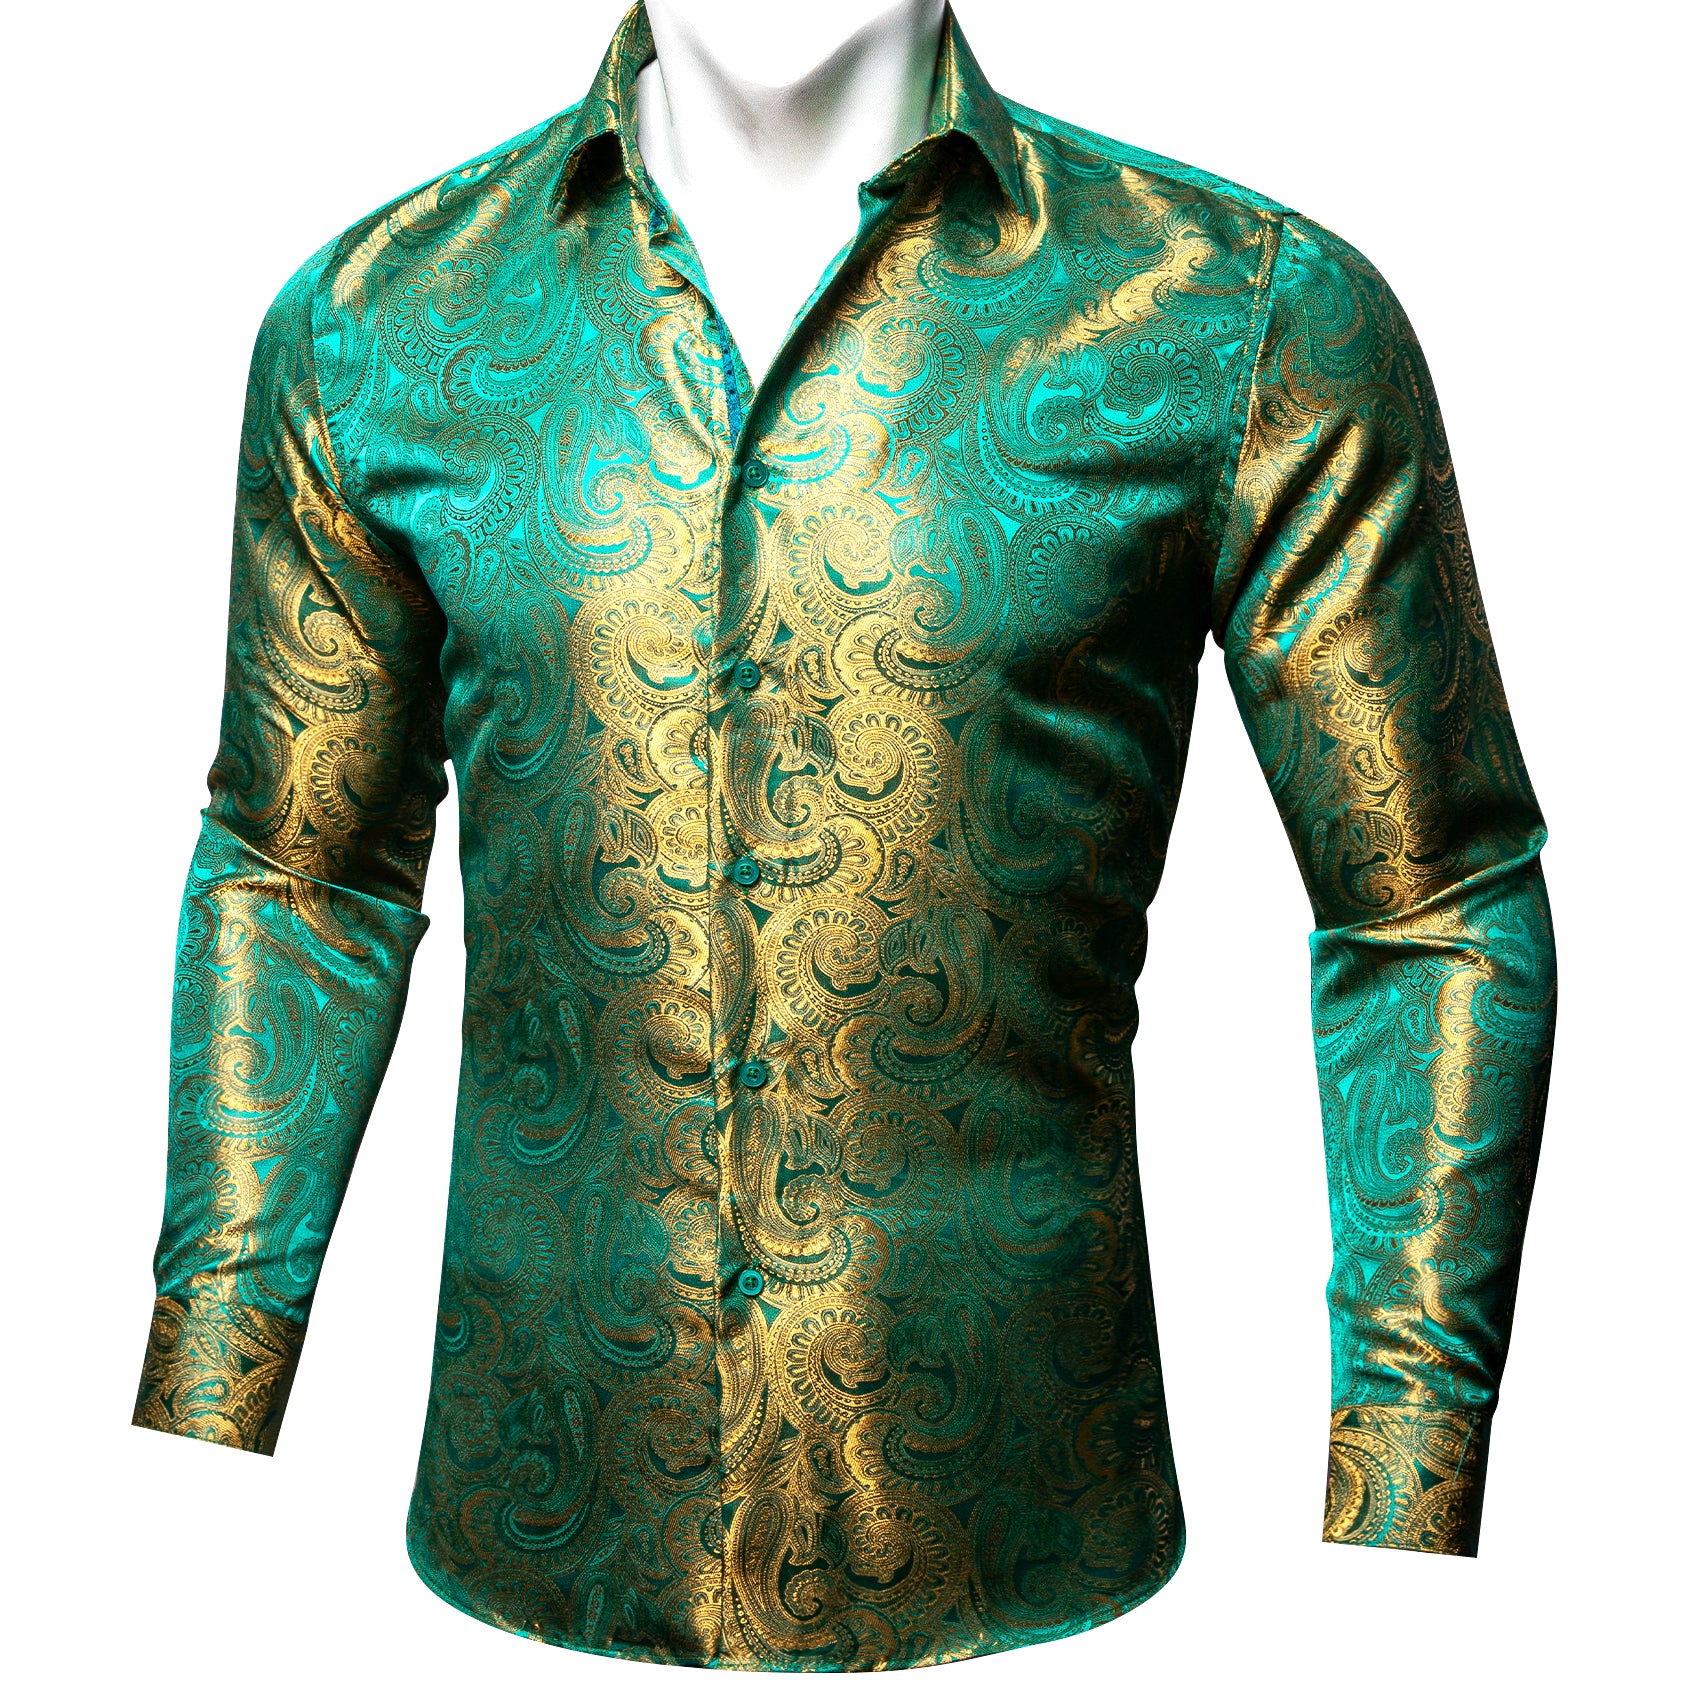 Barry.wang Button Down Shirt Green Gold Paisley Silk Men's Shirt